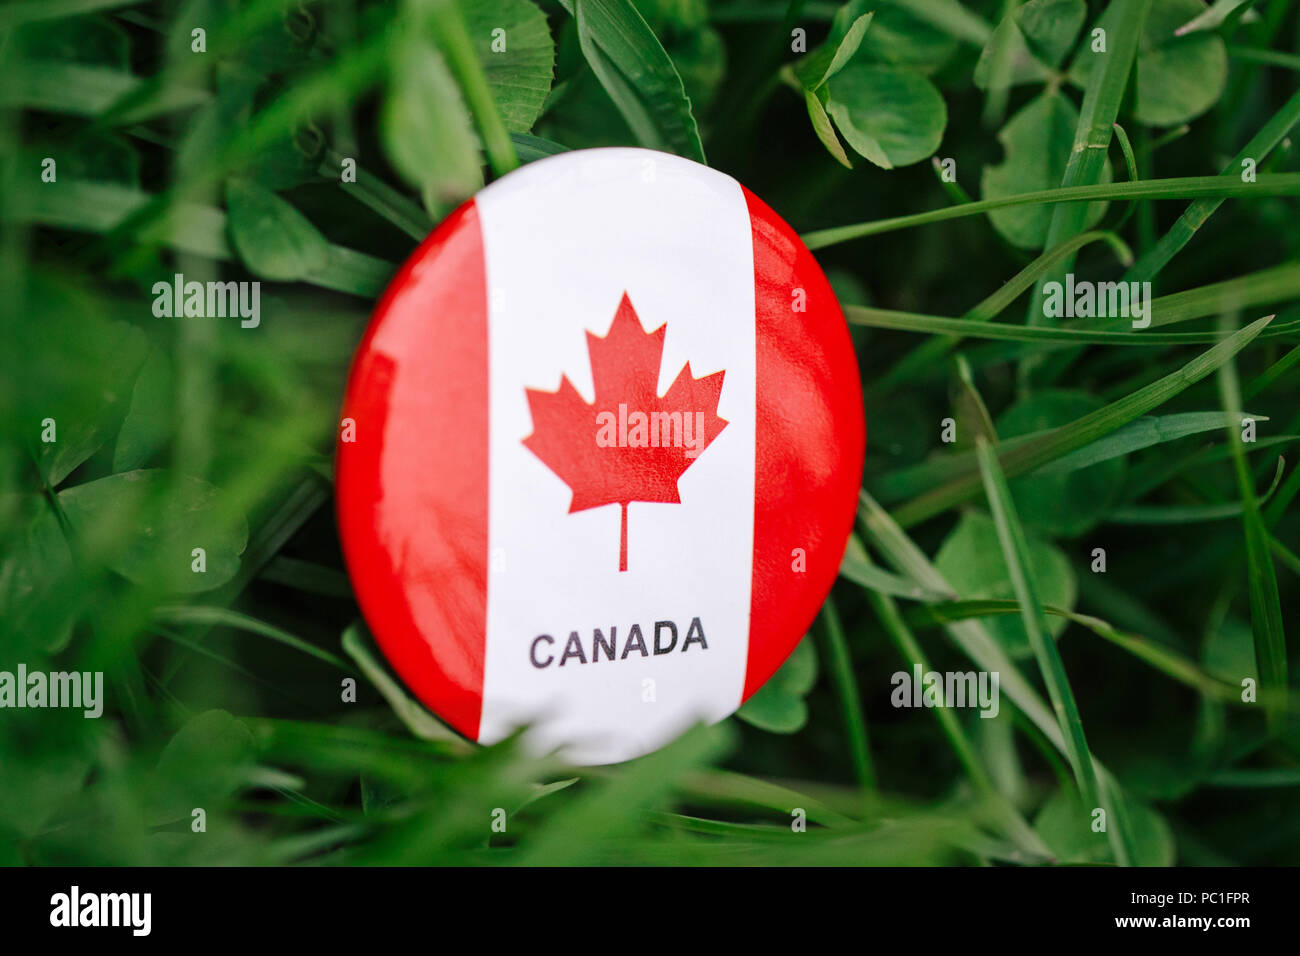 Dòng huy hiệu hình tròn của Canada là một trong những biểu tượng đáng tự hào của đất nước này. Sự tinh tế trong thiết kế cùng với sự đa dạng về màu sắc, hình ảnh và thông điệp đã tạo nên một sản phẩm hoàn hảo. Hãy đón xem hình ảnh liên quan đến dòng huy hiệu hình tròn này để cảm nhận sự đẳng cấp của Canada.